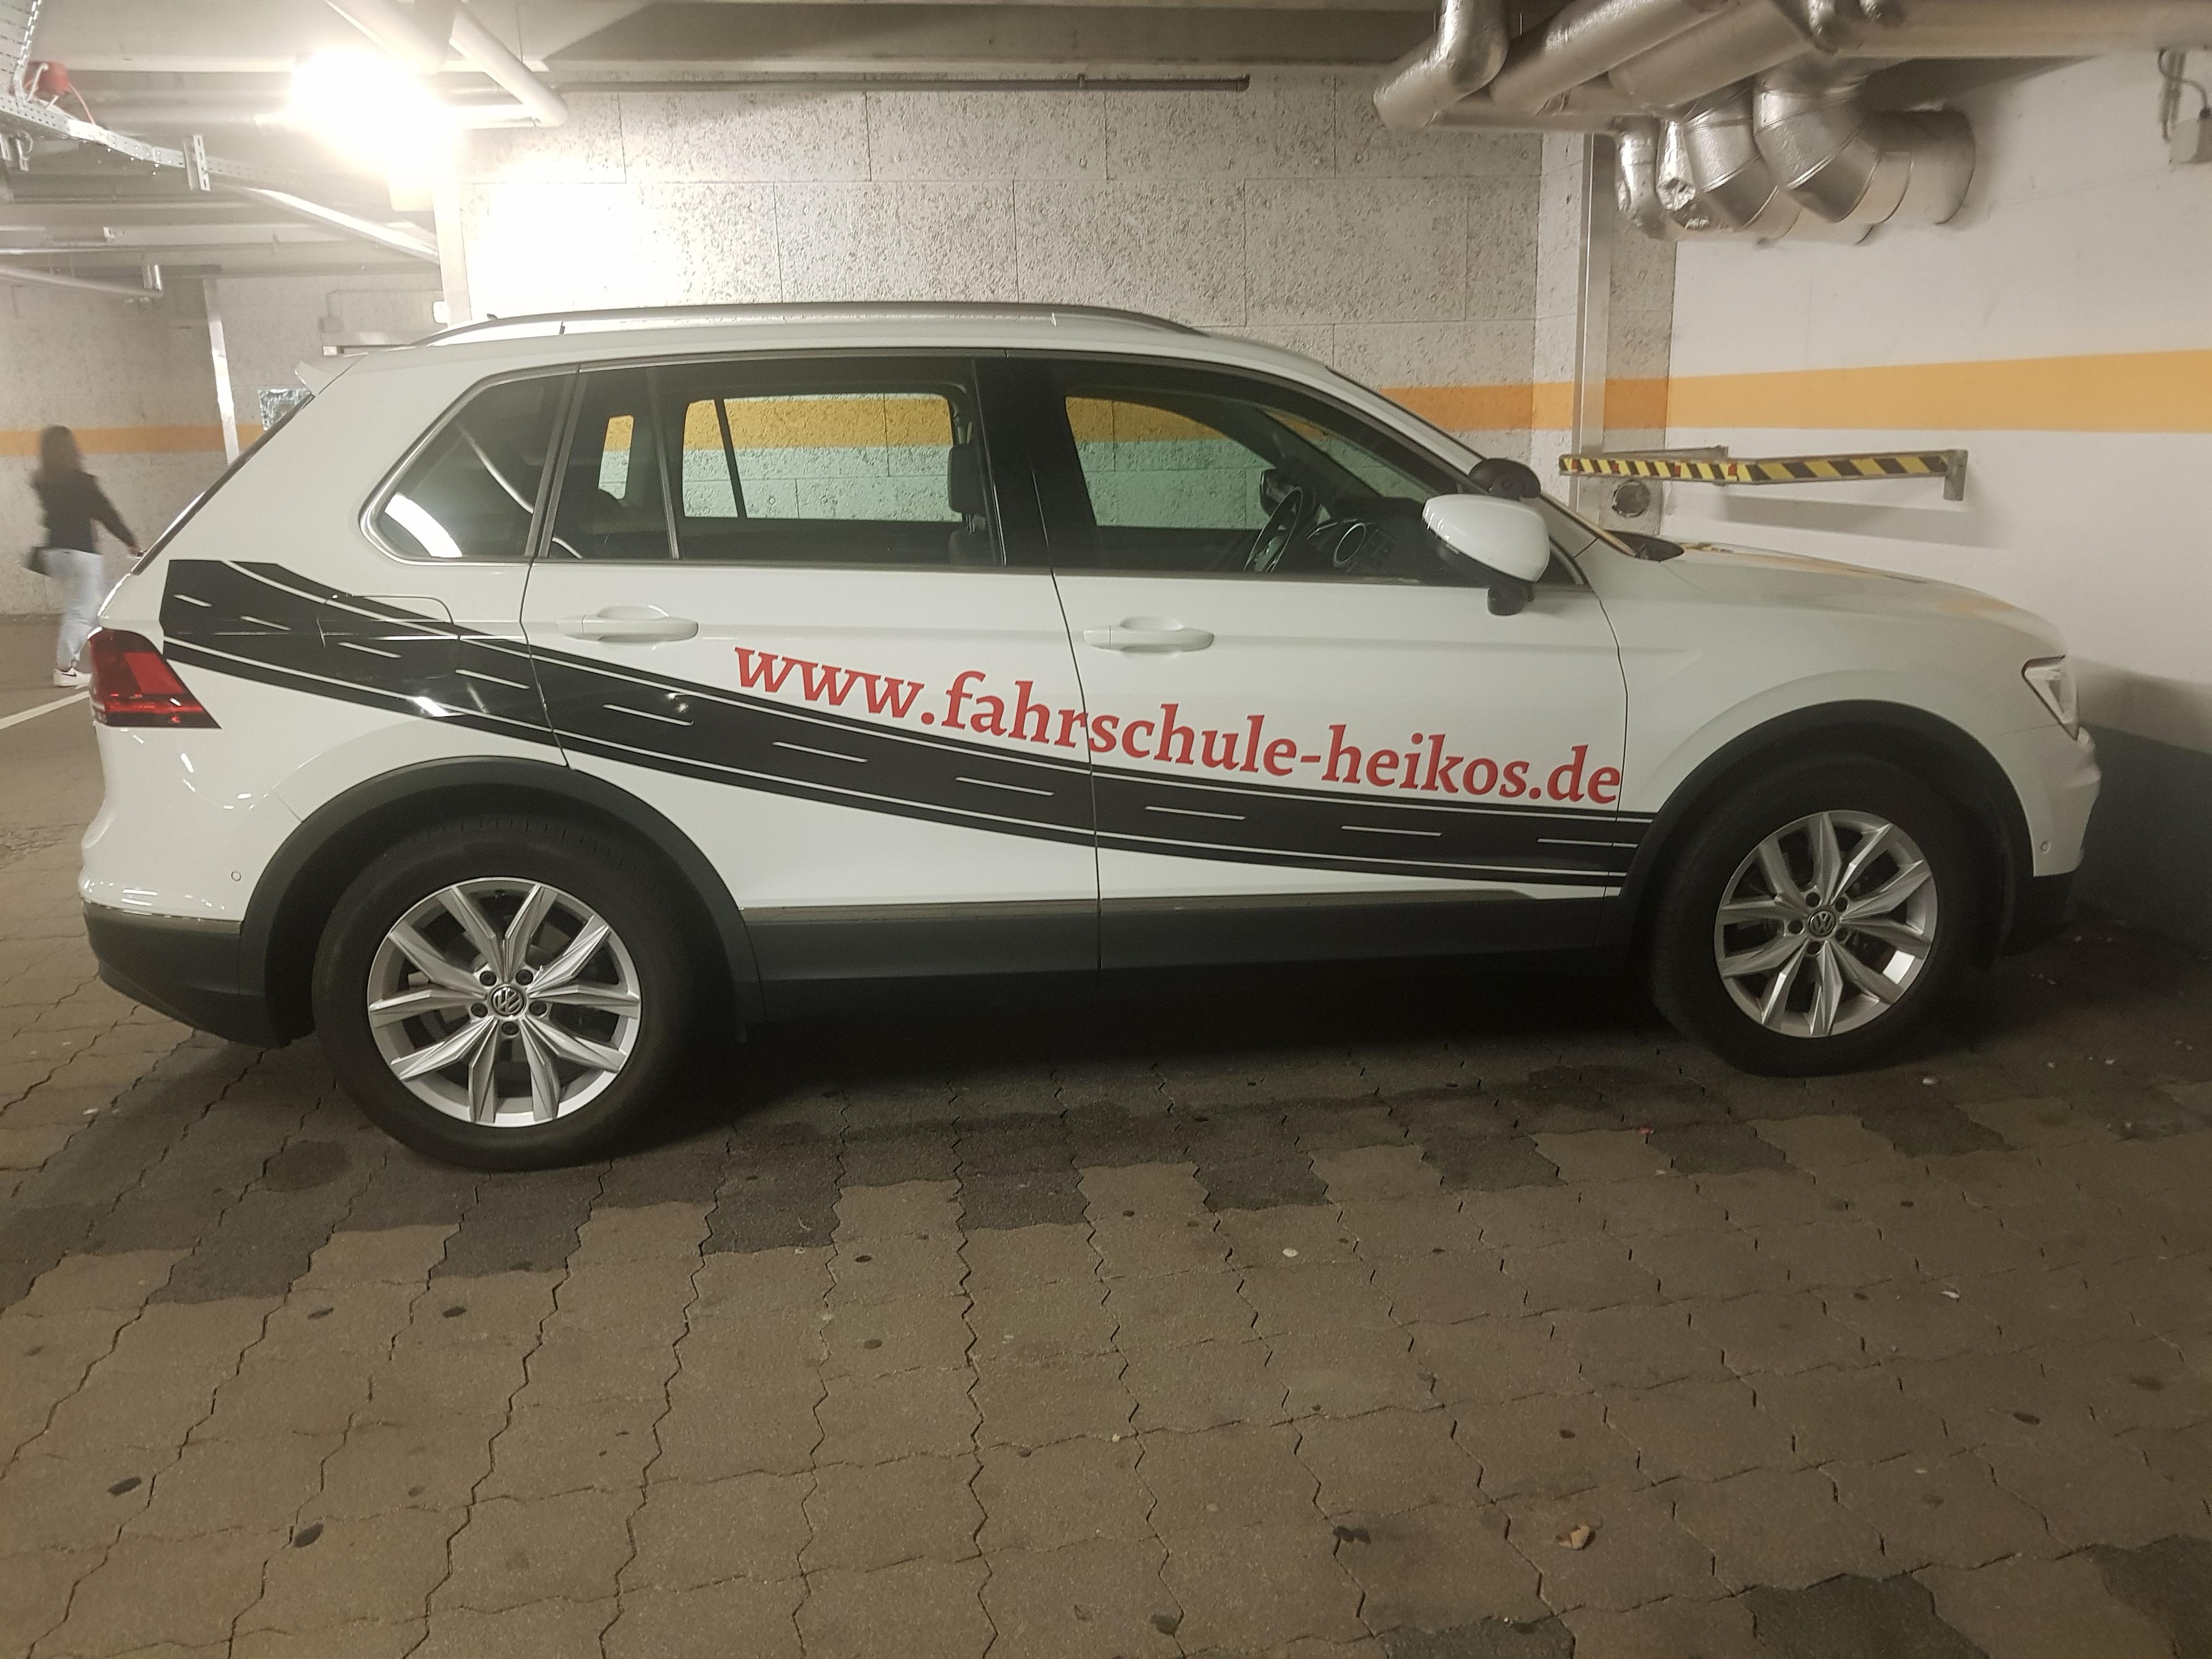 Kundenbild groß 14 Heiko's Fahrschule | Fahrtraining Führerschein Auto | Perlach München